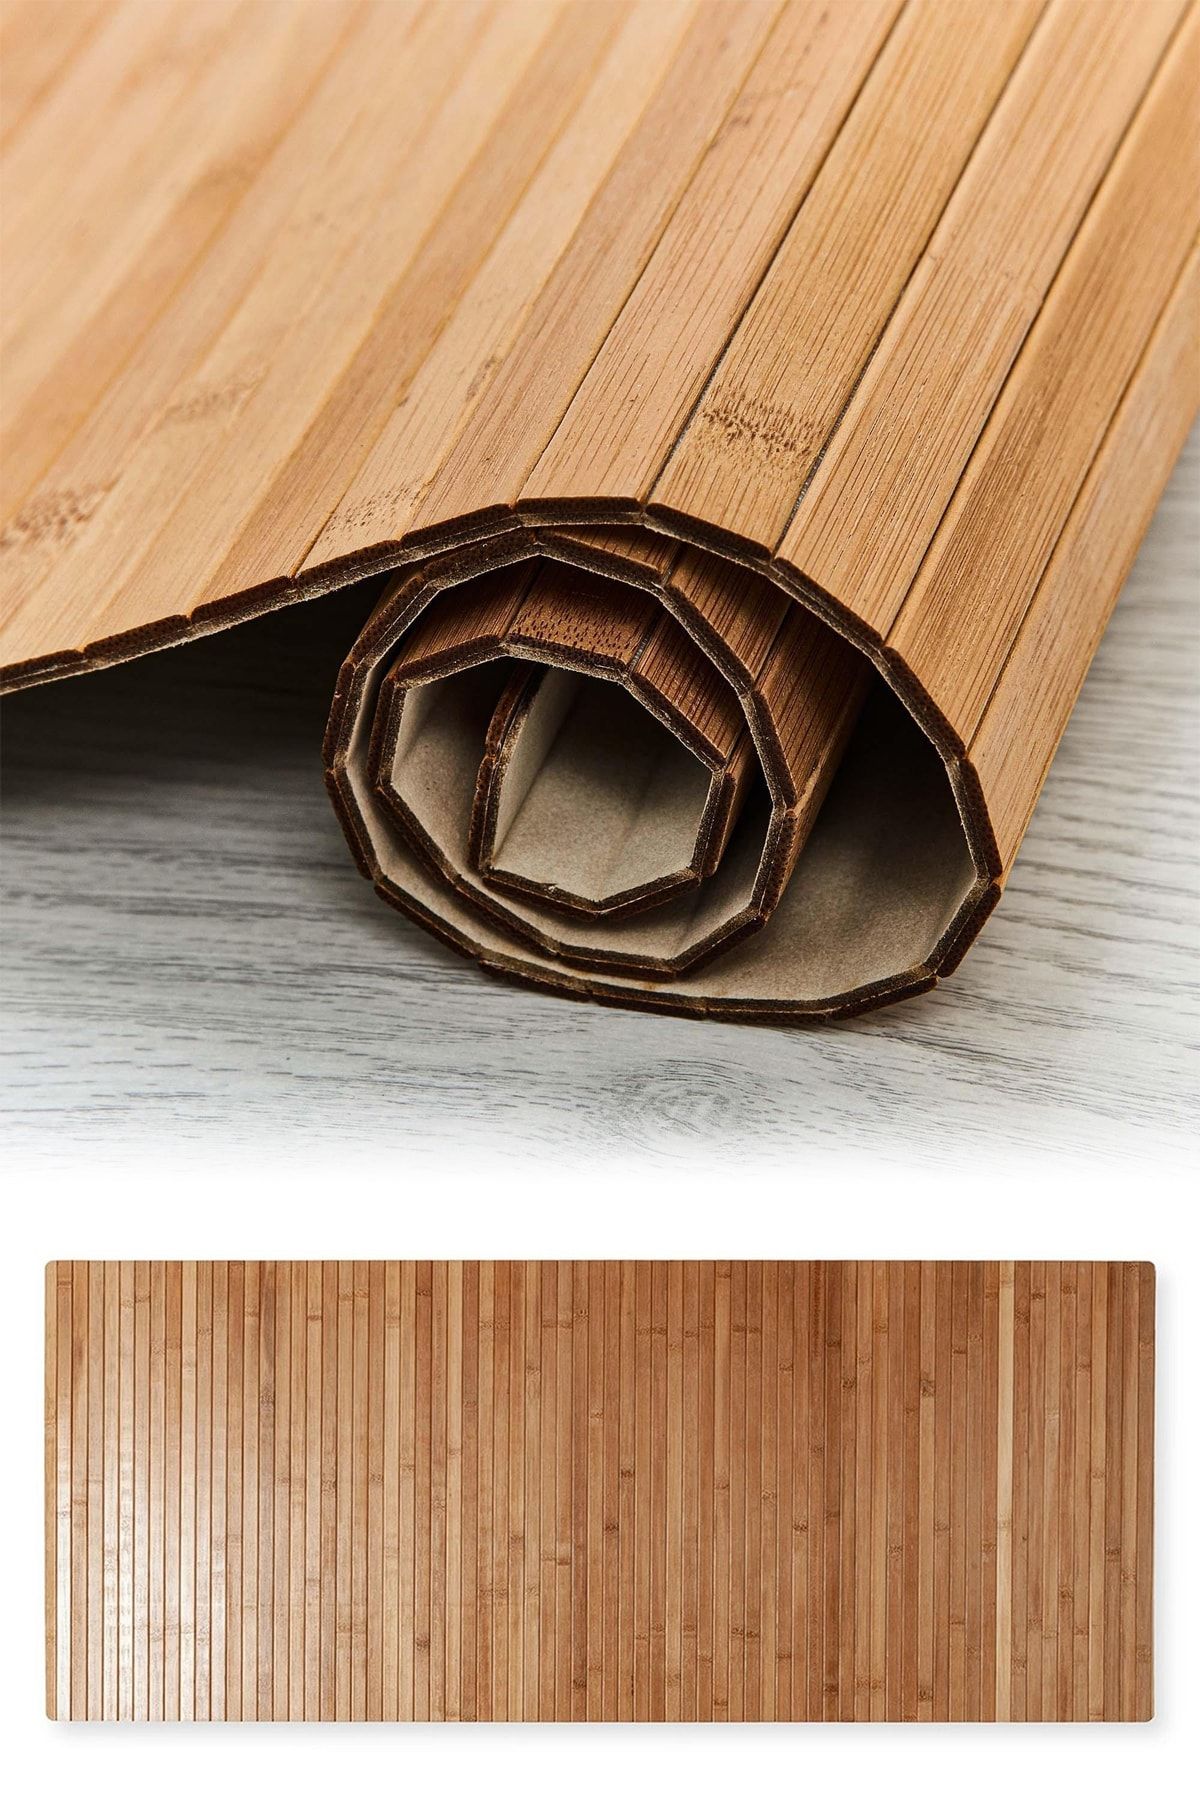 Binbirreyon Doğal Bambu Banyo Paspası Kaydırmaz Özellikli 50x120cm Lc016